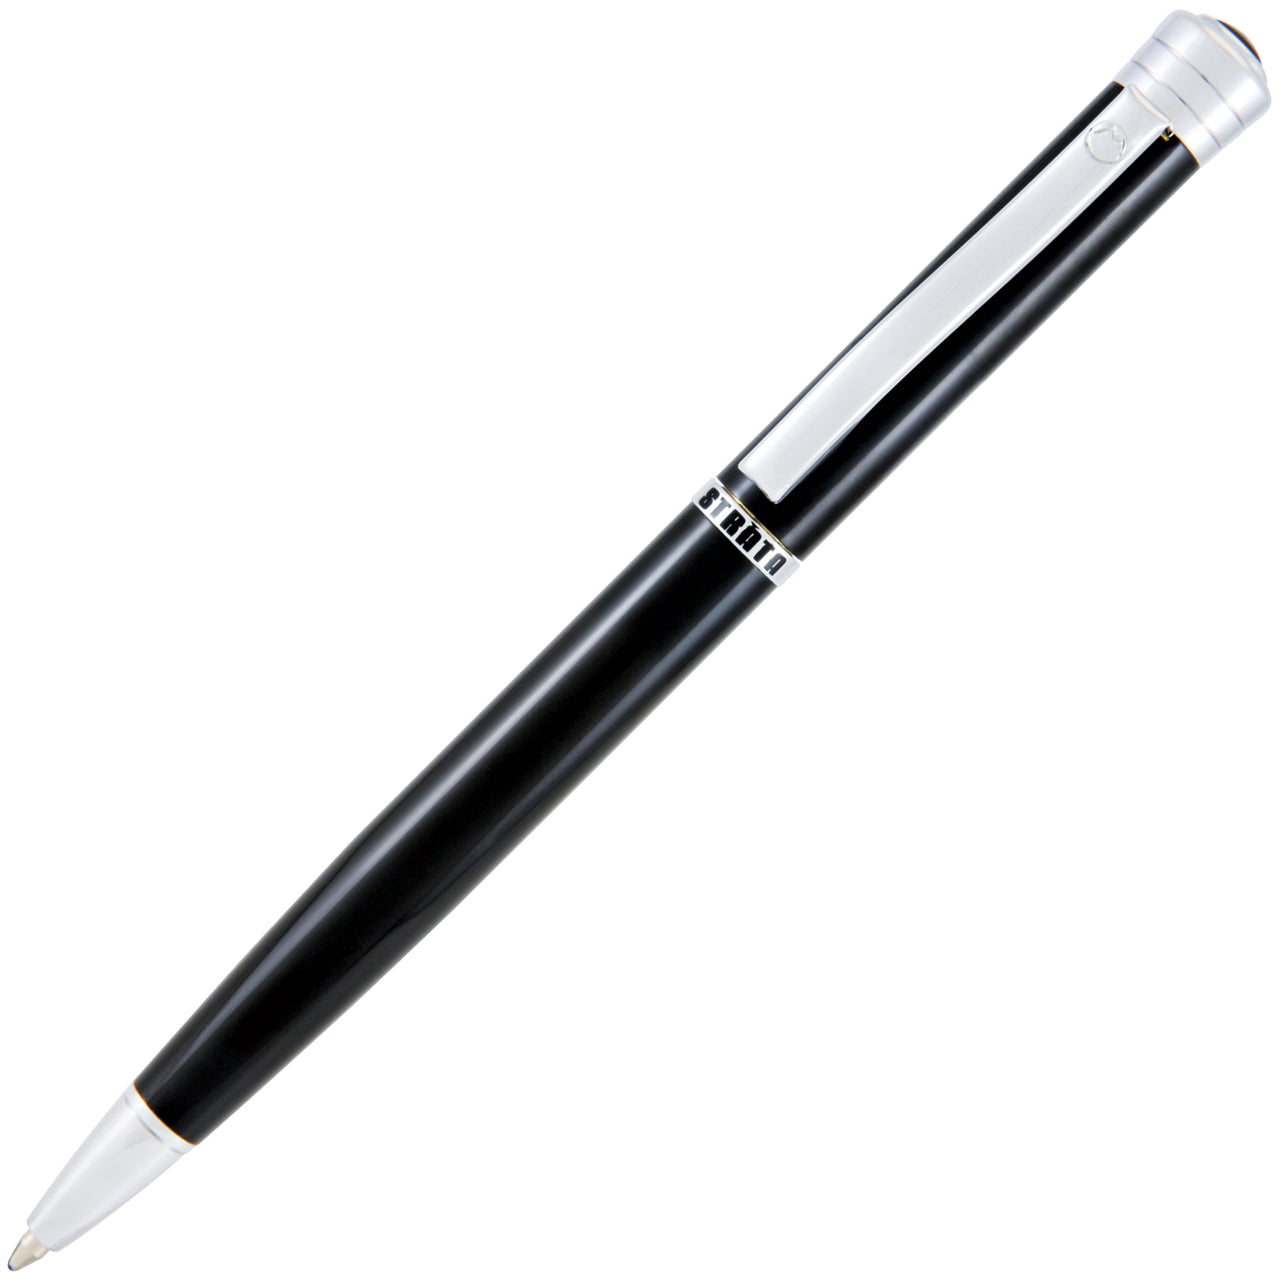 Monteverde Strata Black Ballpoint Pen | Pen Store | Pen Place Since 1968